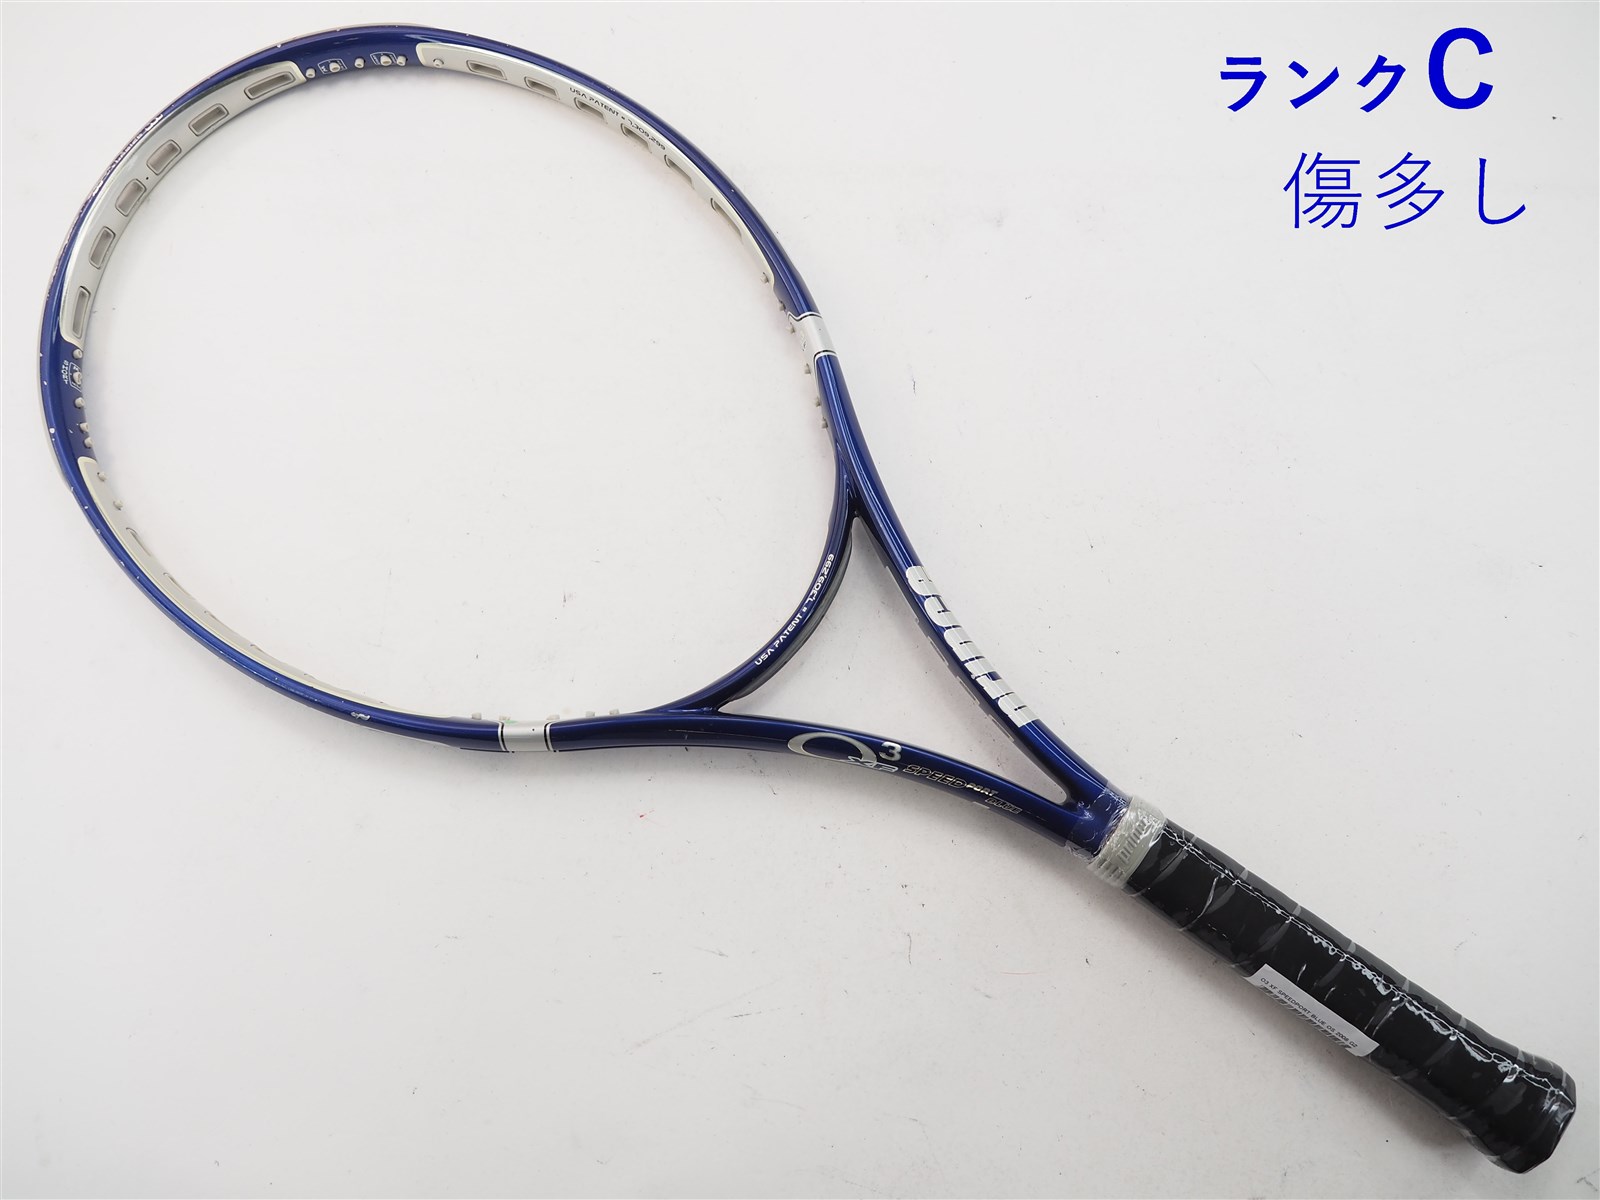 テニスラケット プリンス オースリー エックスエフ スピードポート ブルー OS 2008年モデル【一部グロメット割れ有り】 (G2)PRINCE O3 XF SPEEDPORT BLUE OS 2008